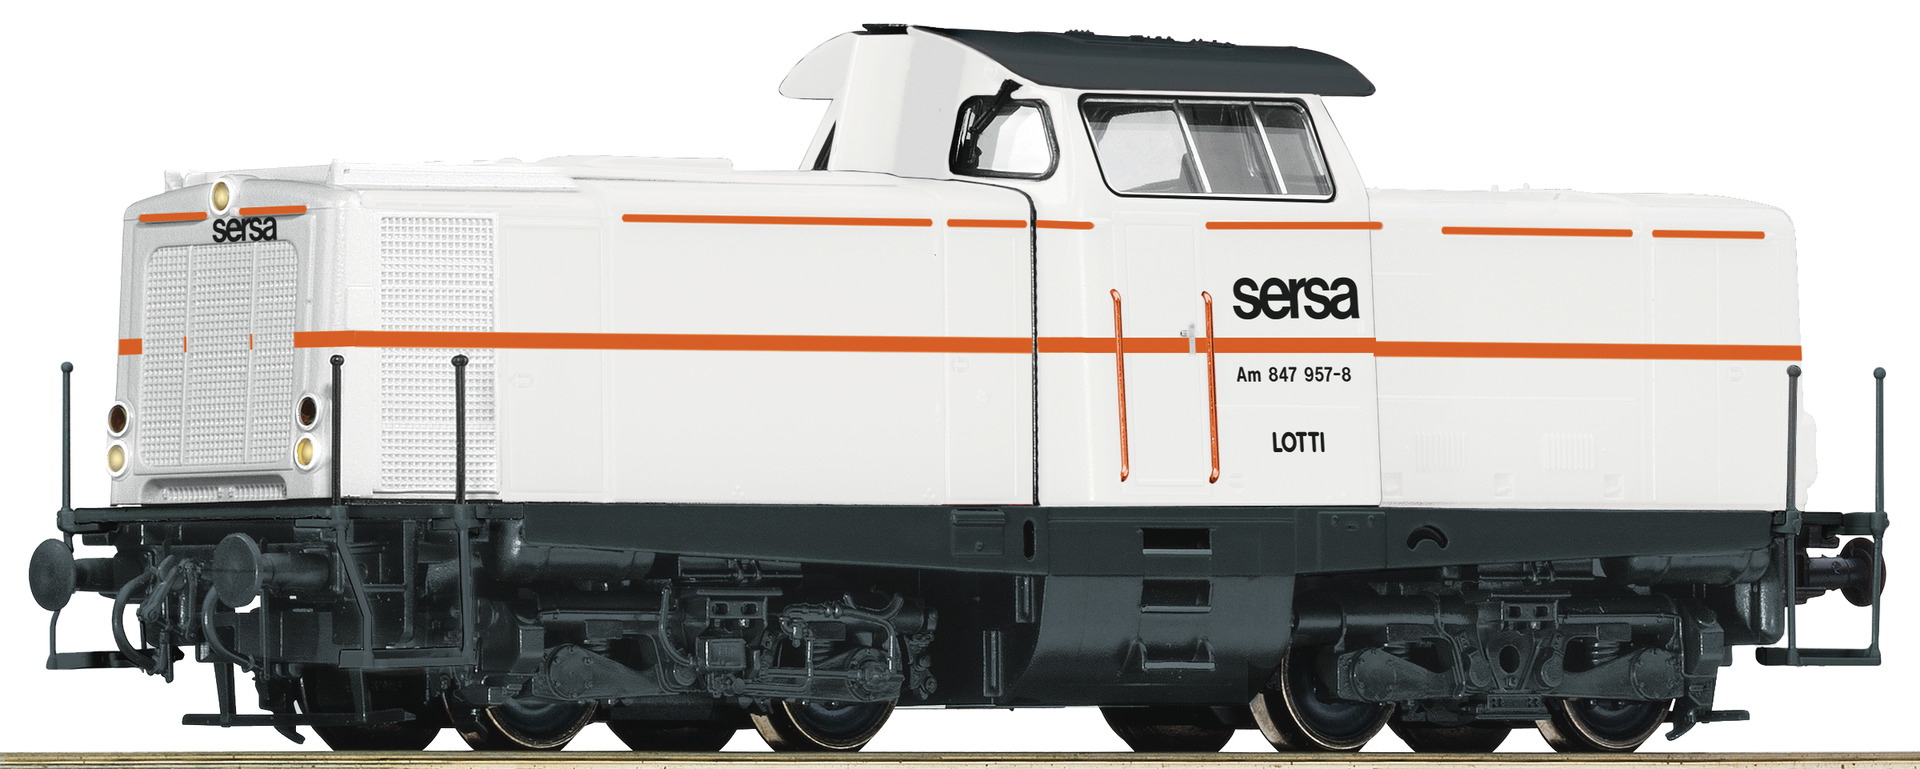 Roco 52565, SERSA Diesellokomotive Am 847 957-8, Ep. VI, DC, analog / Schnittstelle